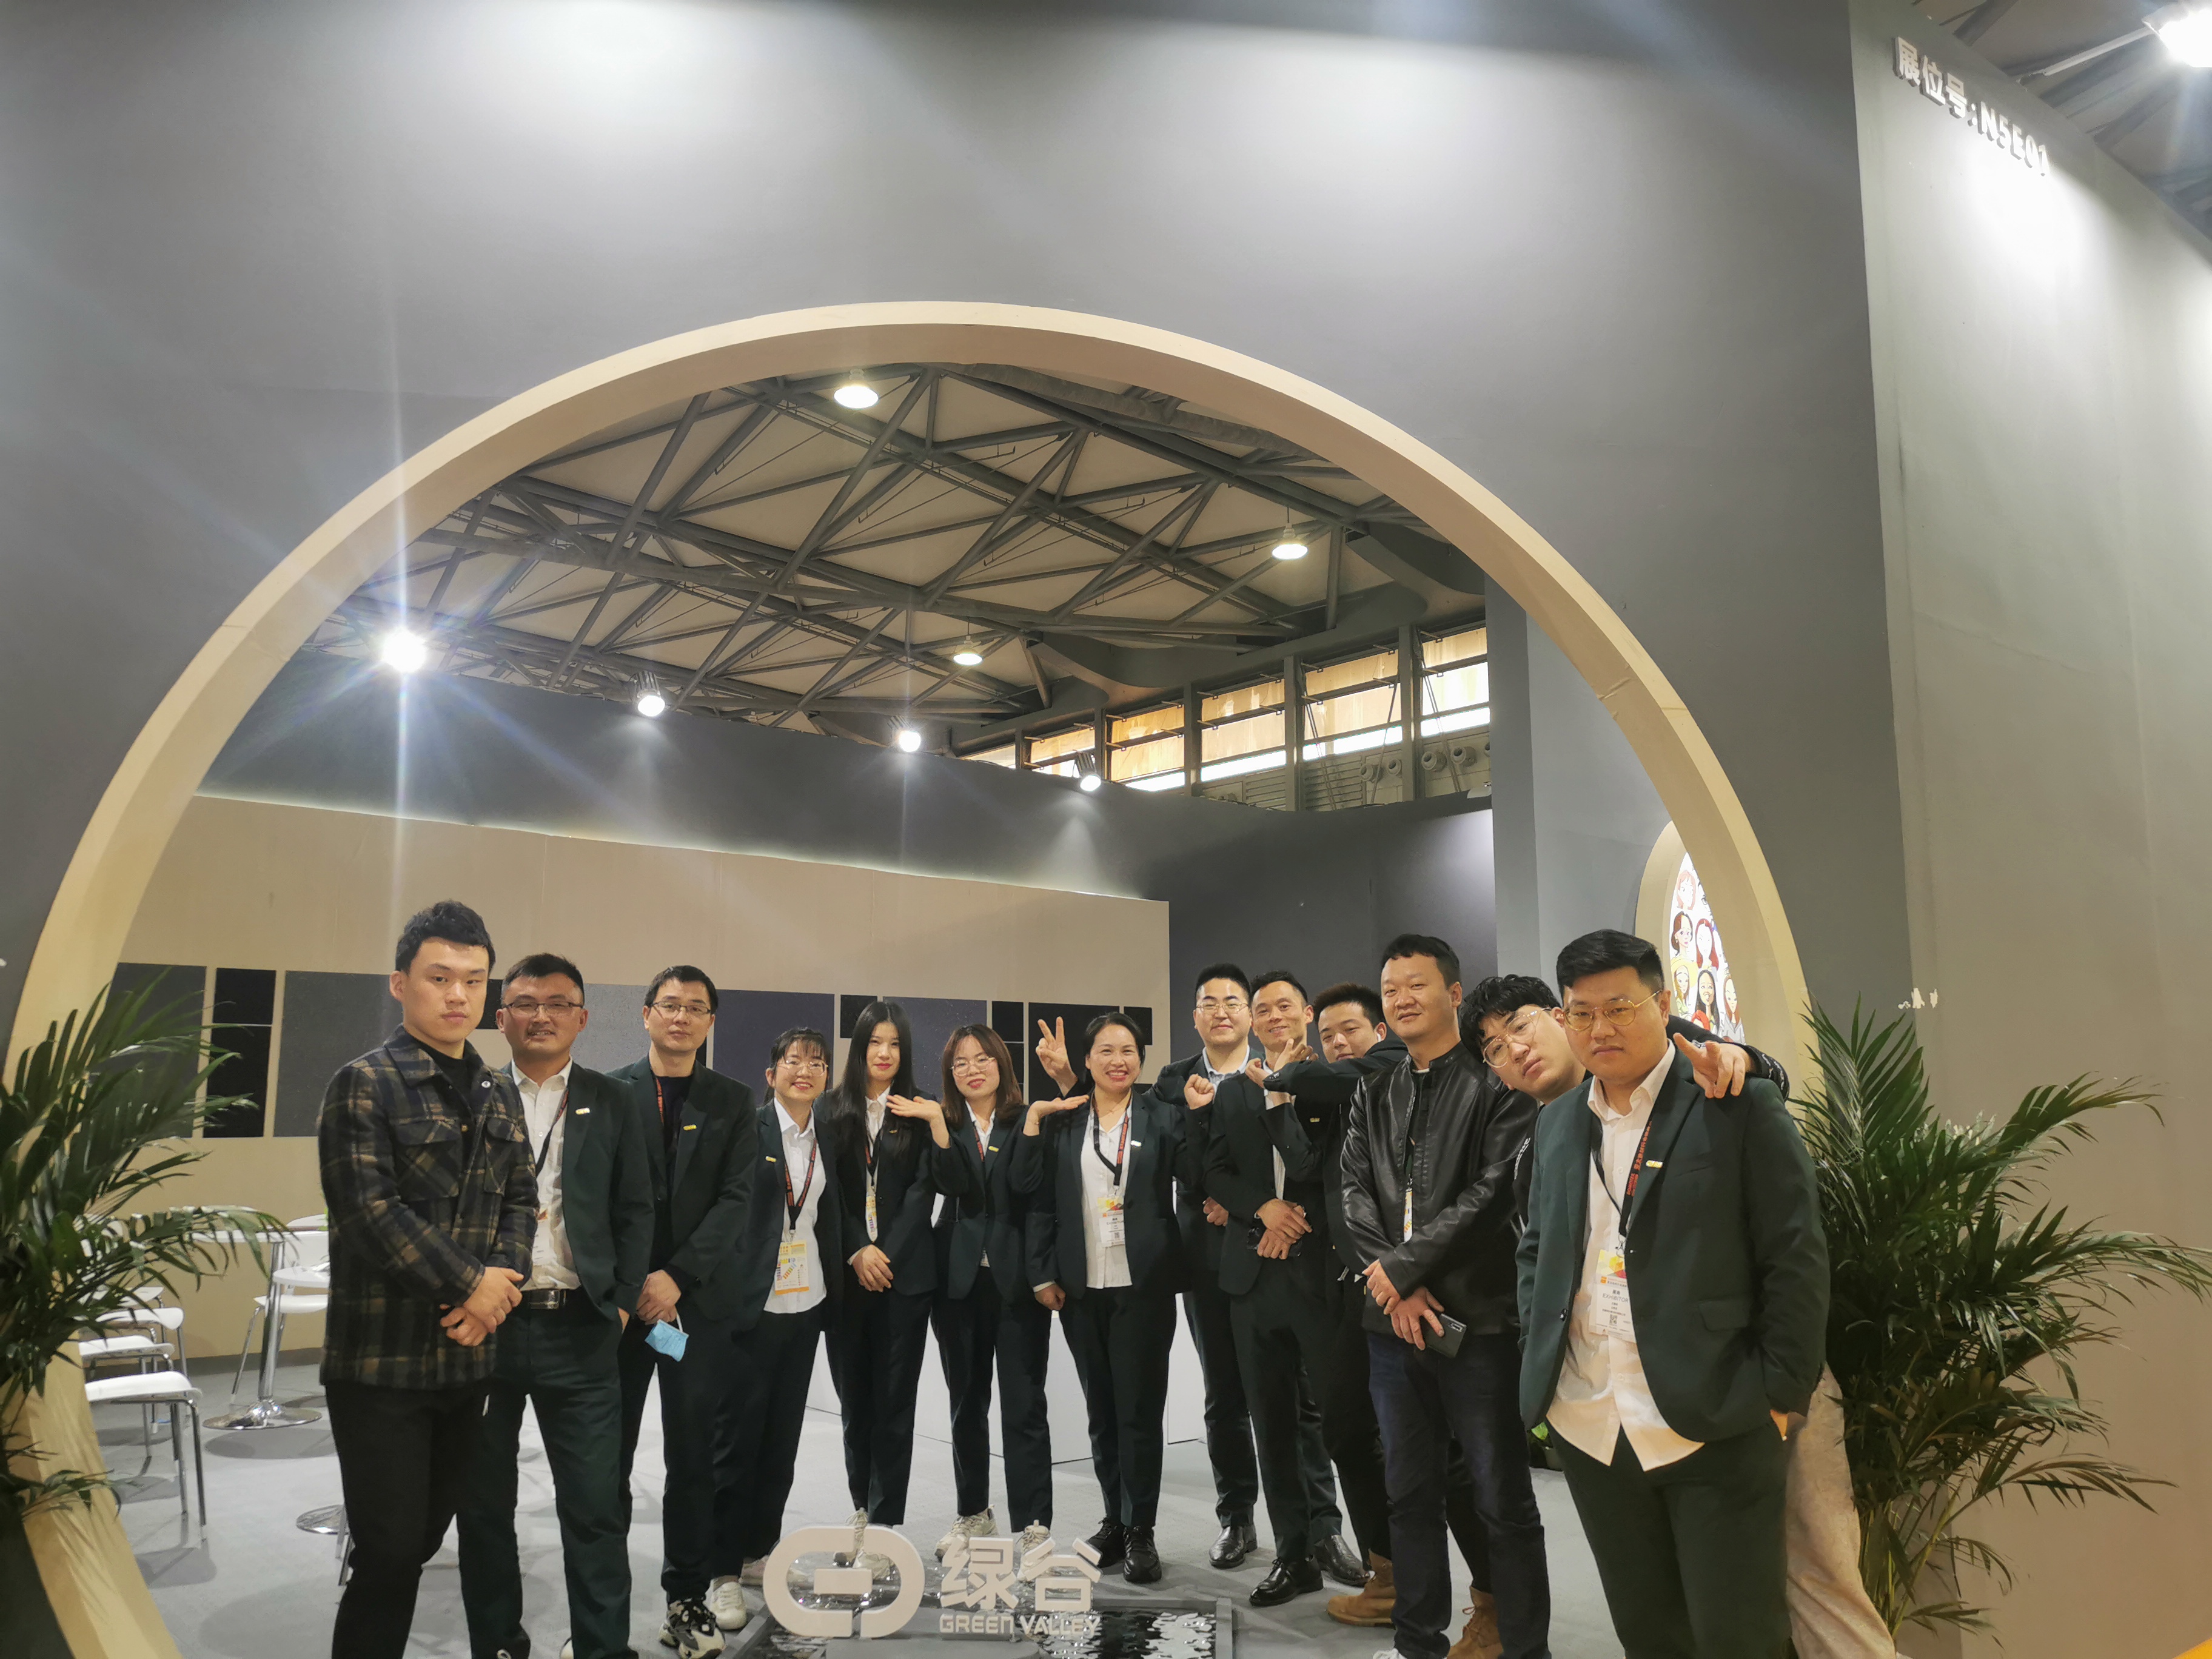 MOSTRA | Shanghai DOMOTEX Flooring Exhibition, Green Valley ha fatto un debutto straordinario con gli ultimi prodotti